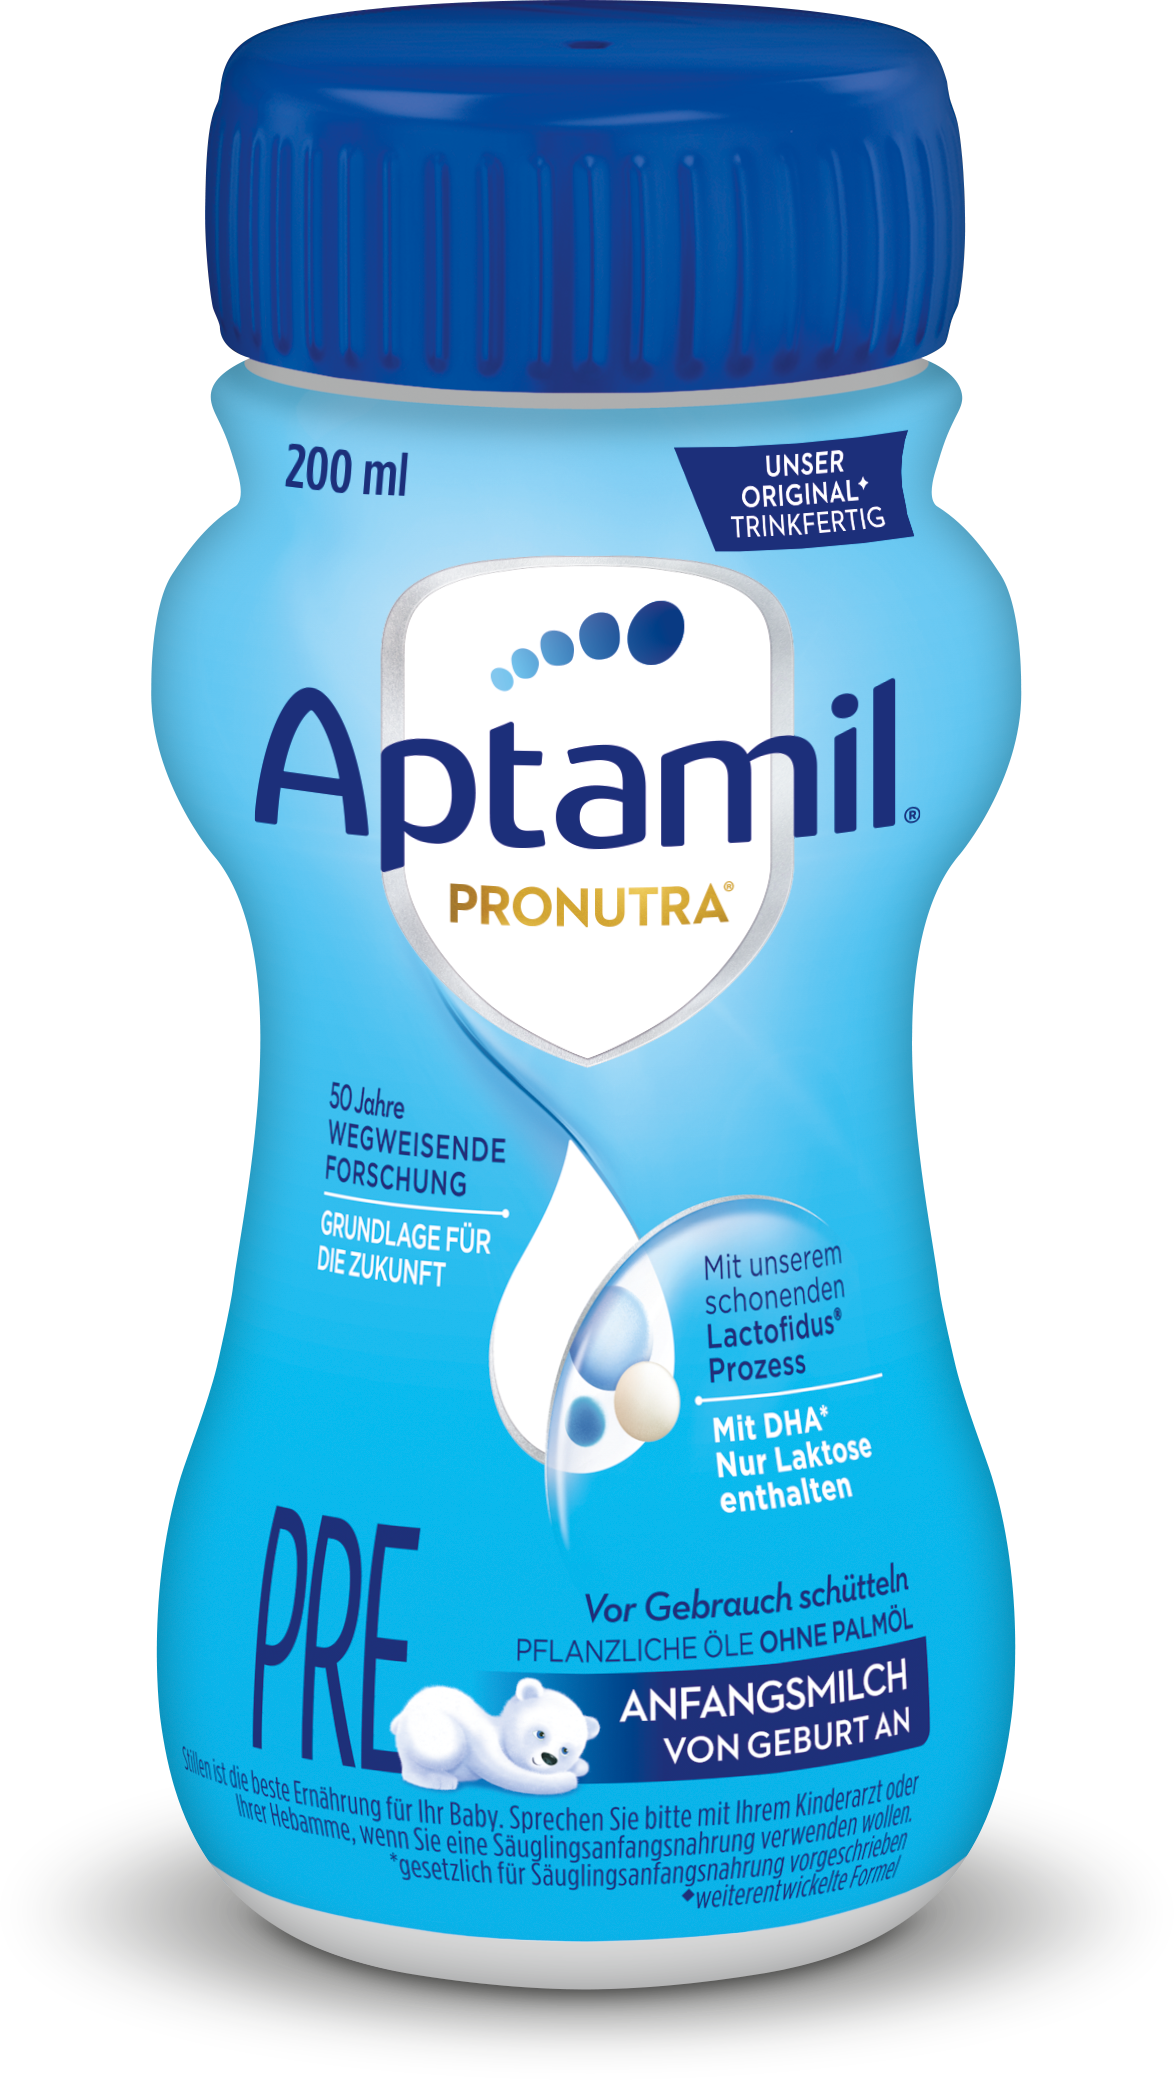 Aptamil Pre Pronutra®, trinkfertig 200 ml, Anfangsmilch